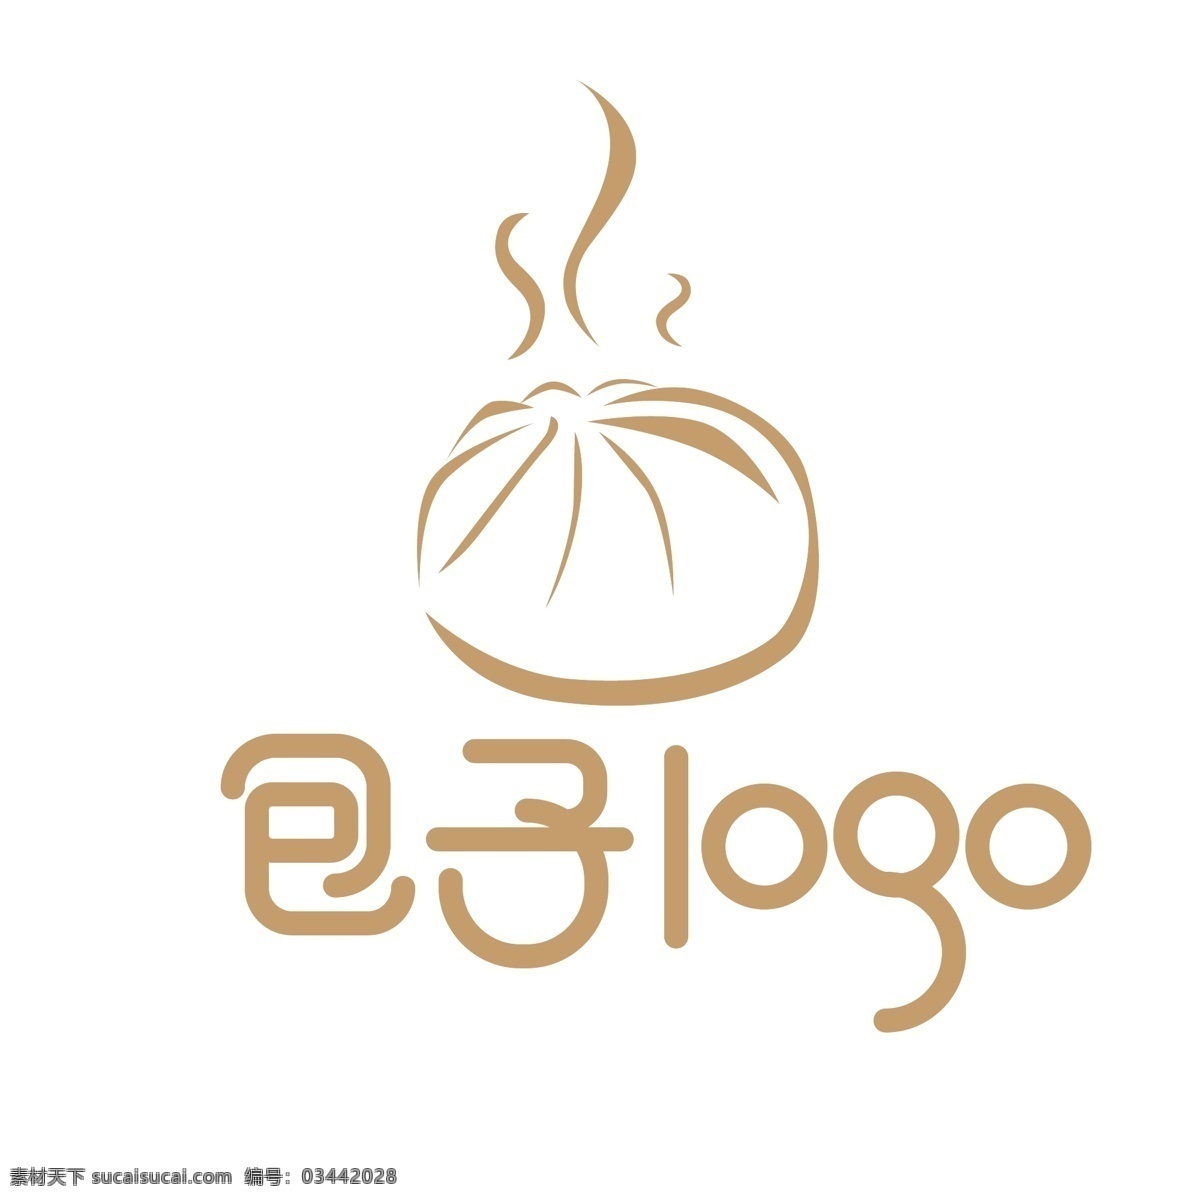 原创 中国 风 logo 包子铺 包子 中国风 早餐 早餐店 早茶